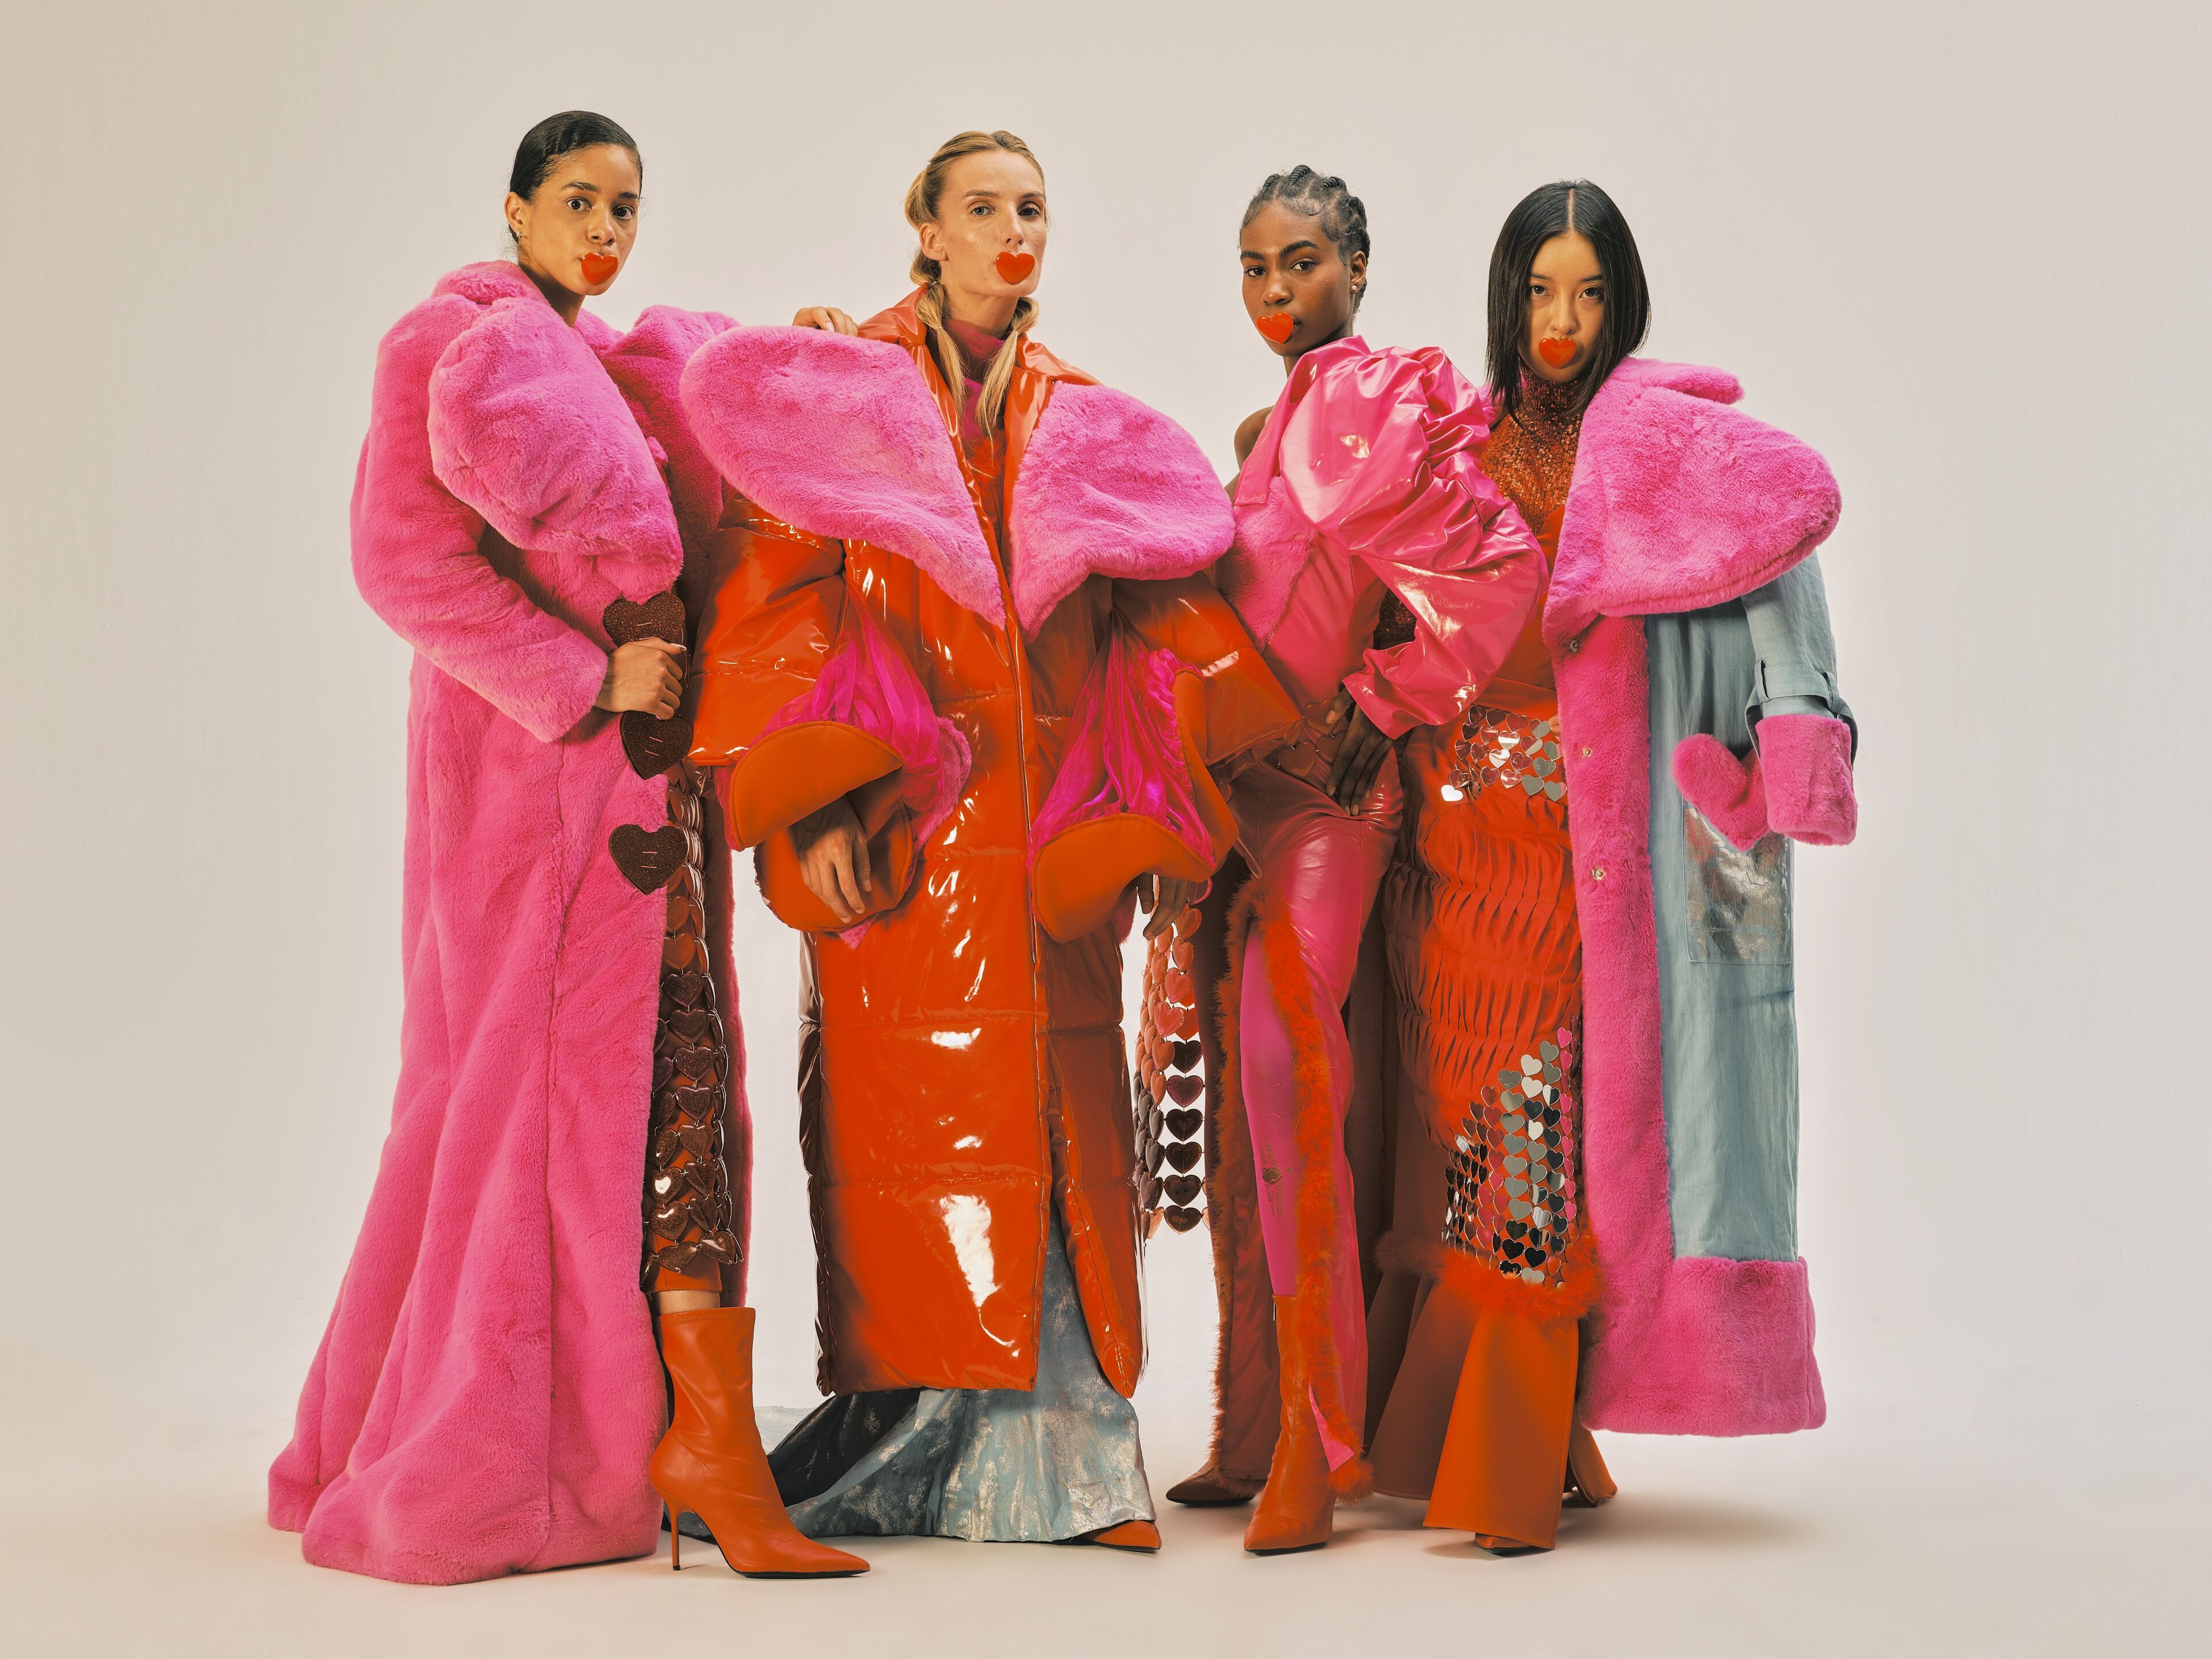 Cuatro modelos posan en ropa de abrigo atrevida y colorida con una mezcla de texturas.